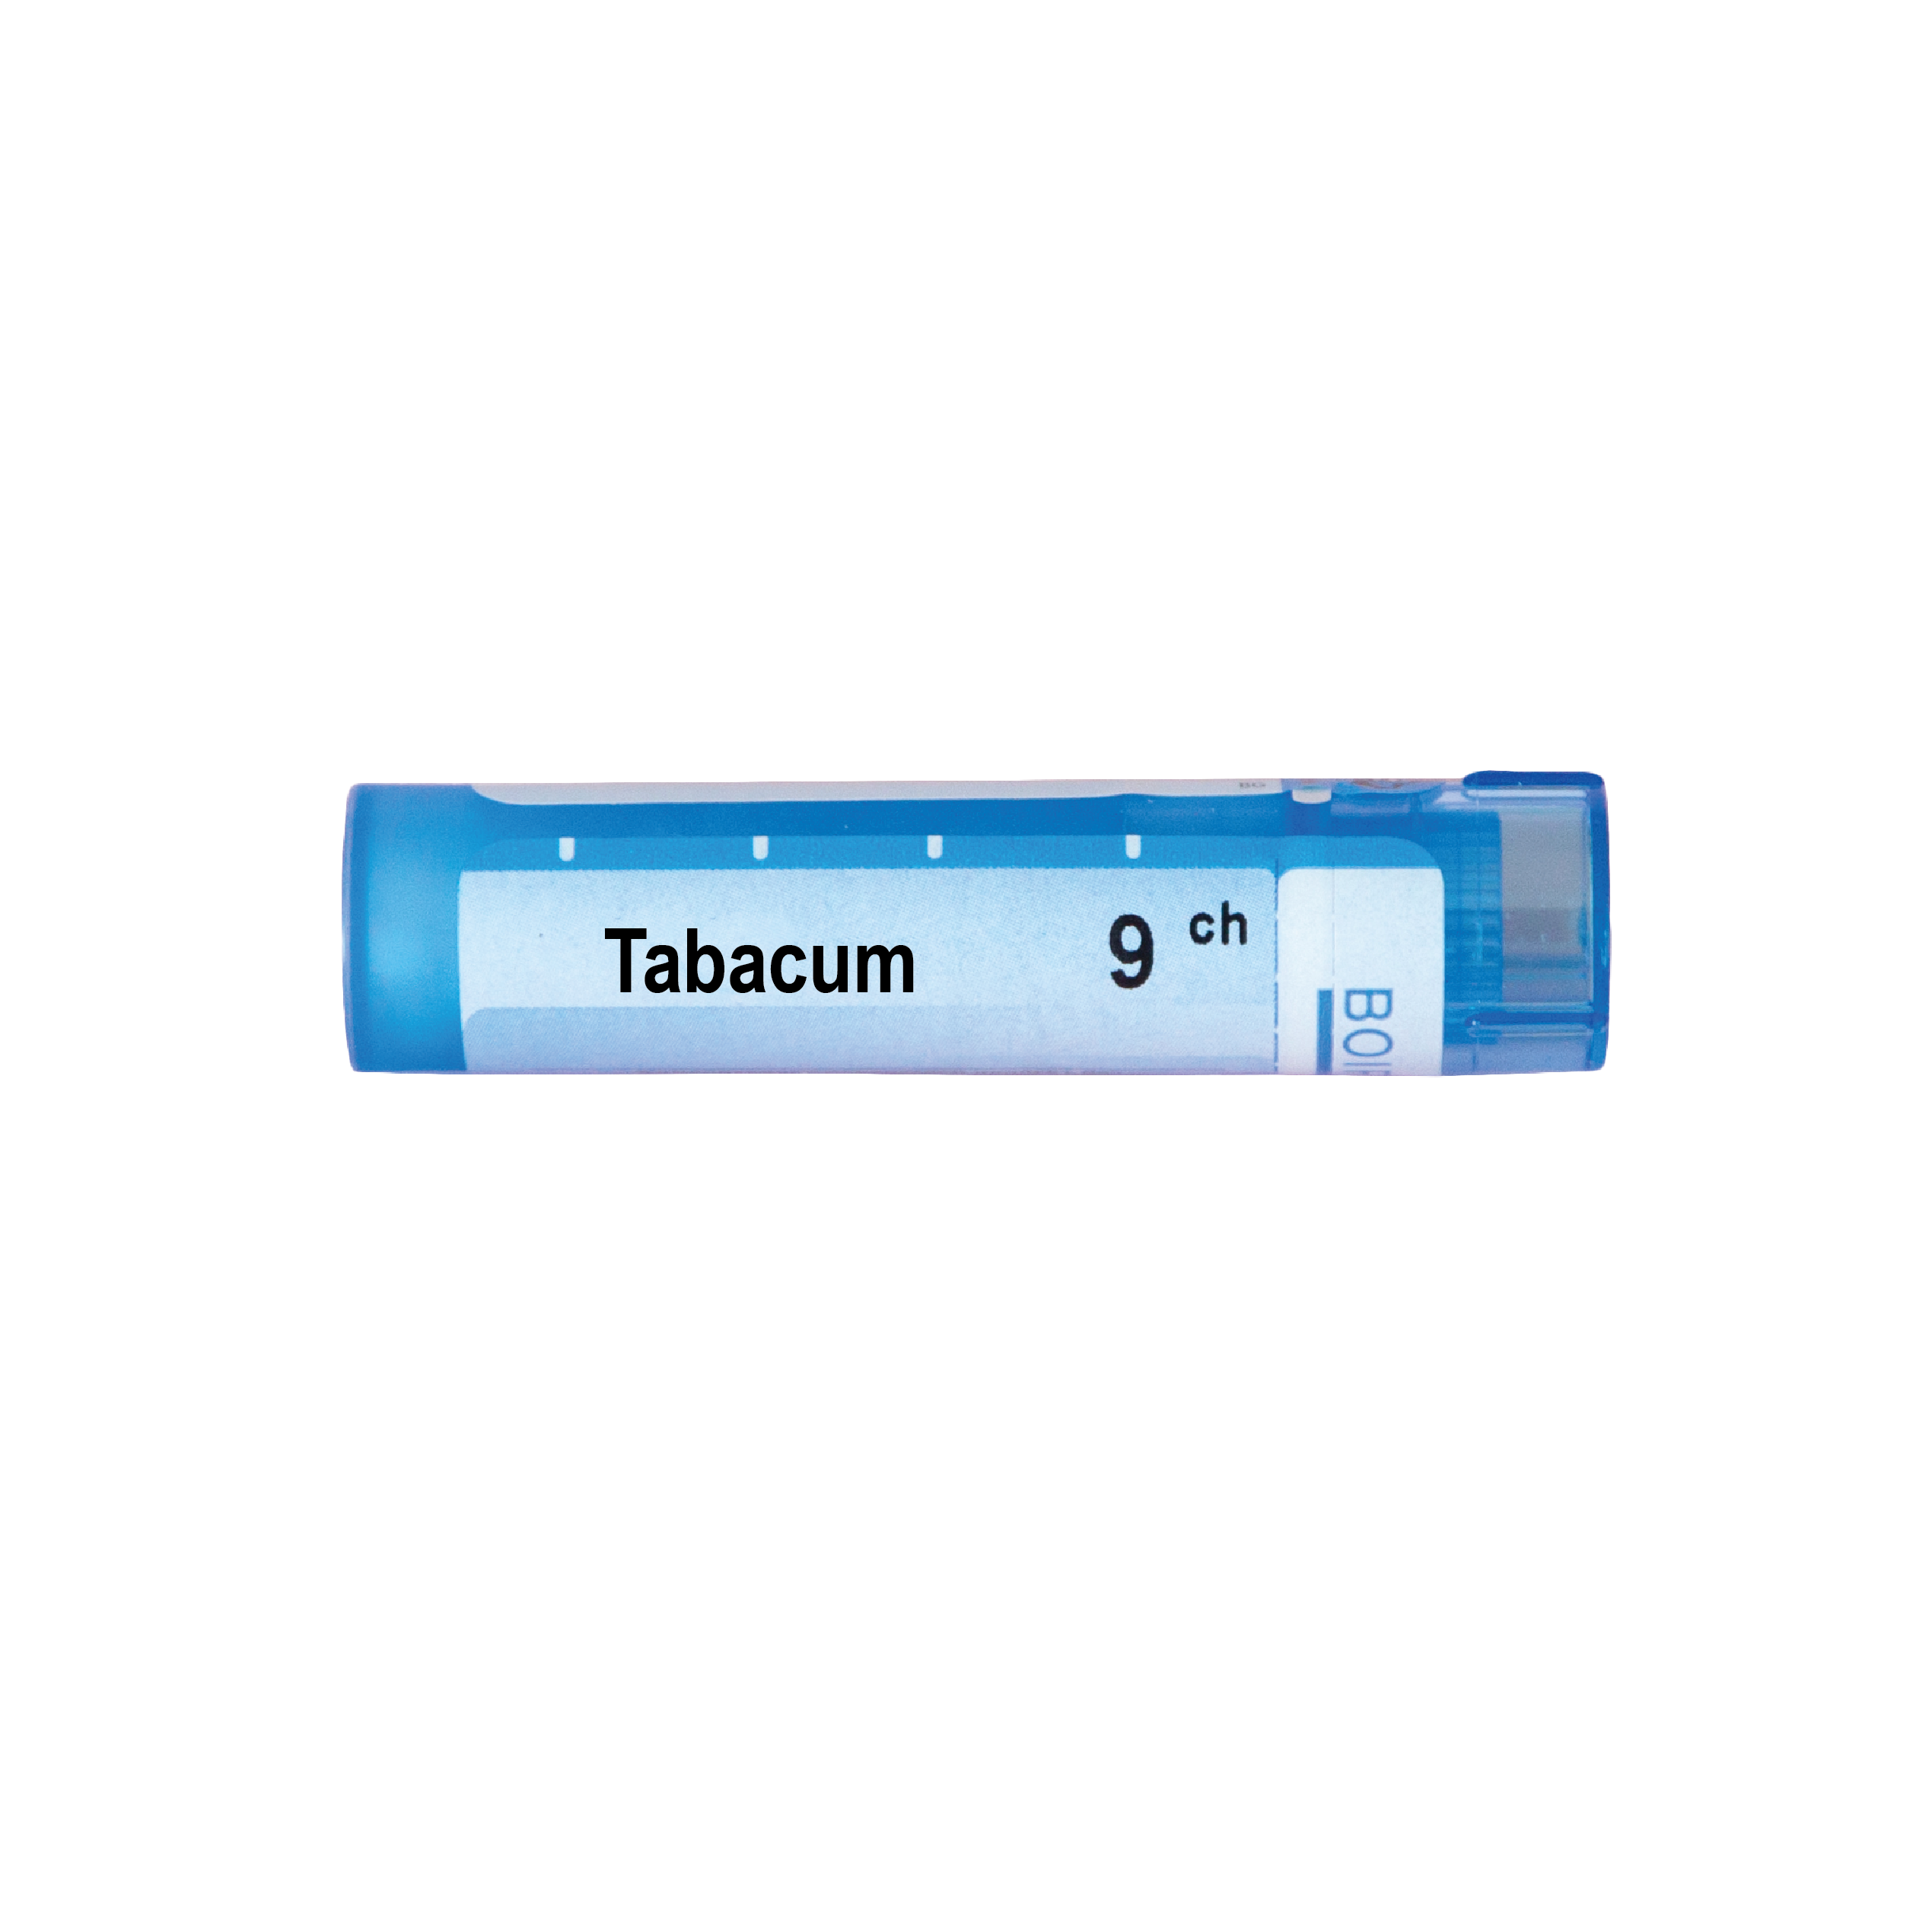 Boiron Табакум 9 СН - Аптеки 36.6